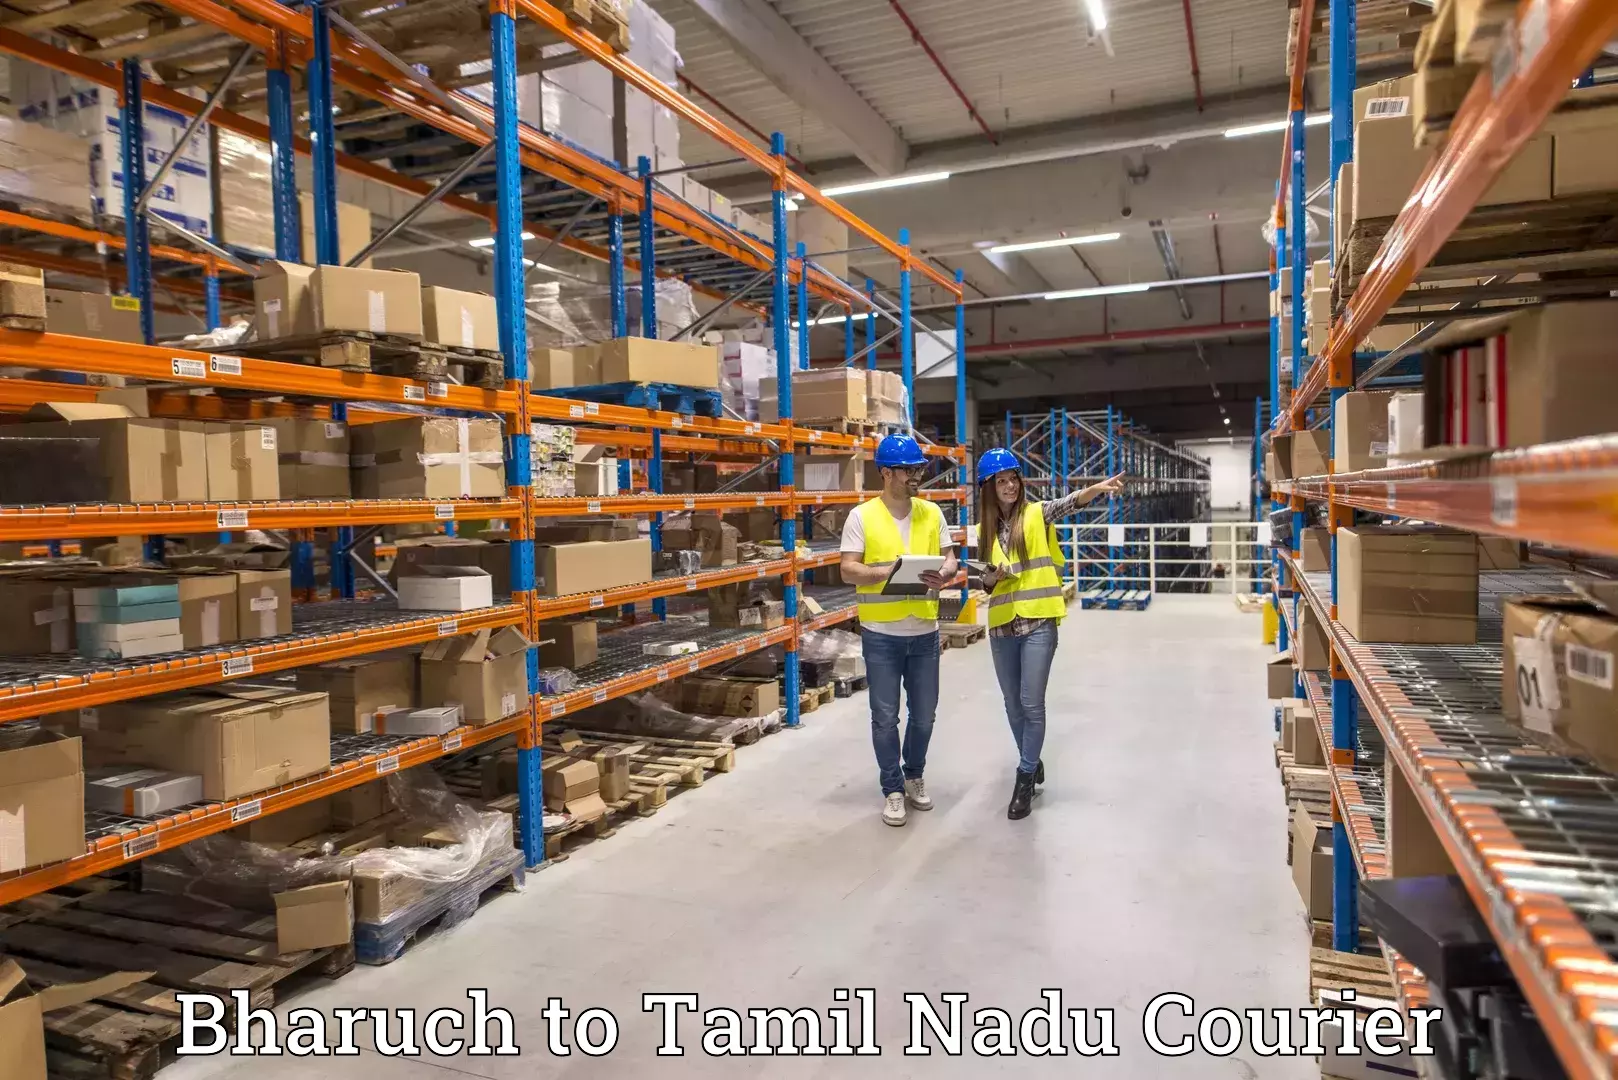 Speedy delivery service Bharuch to Thiruvadanai